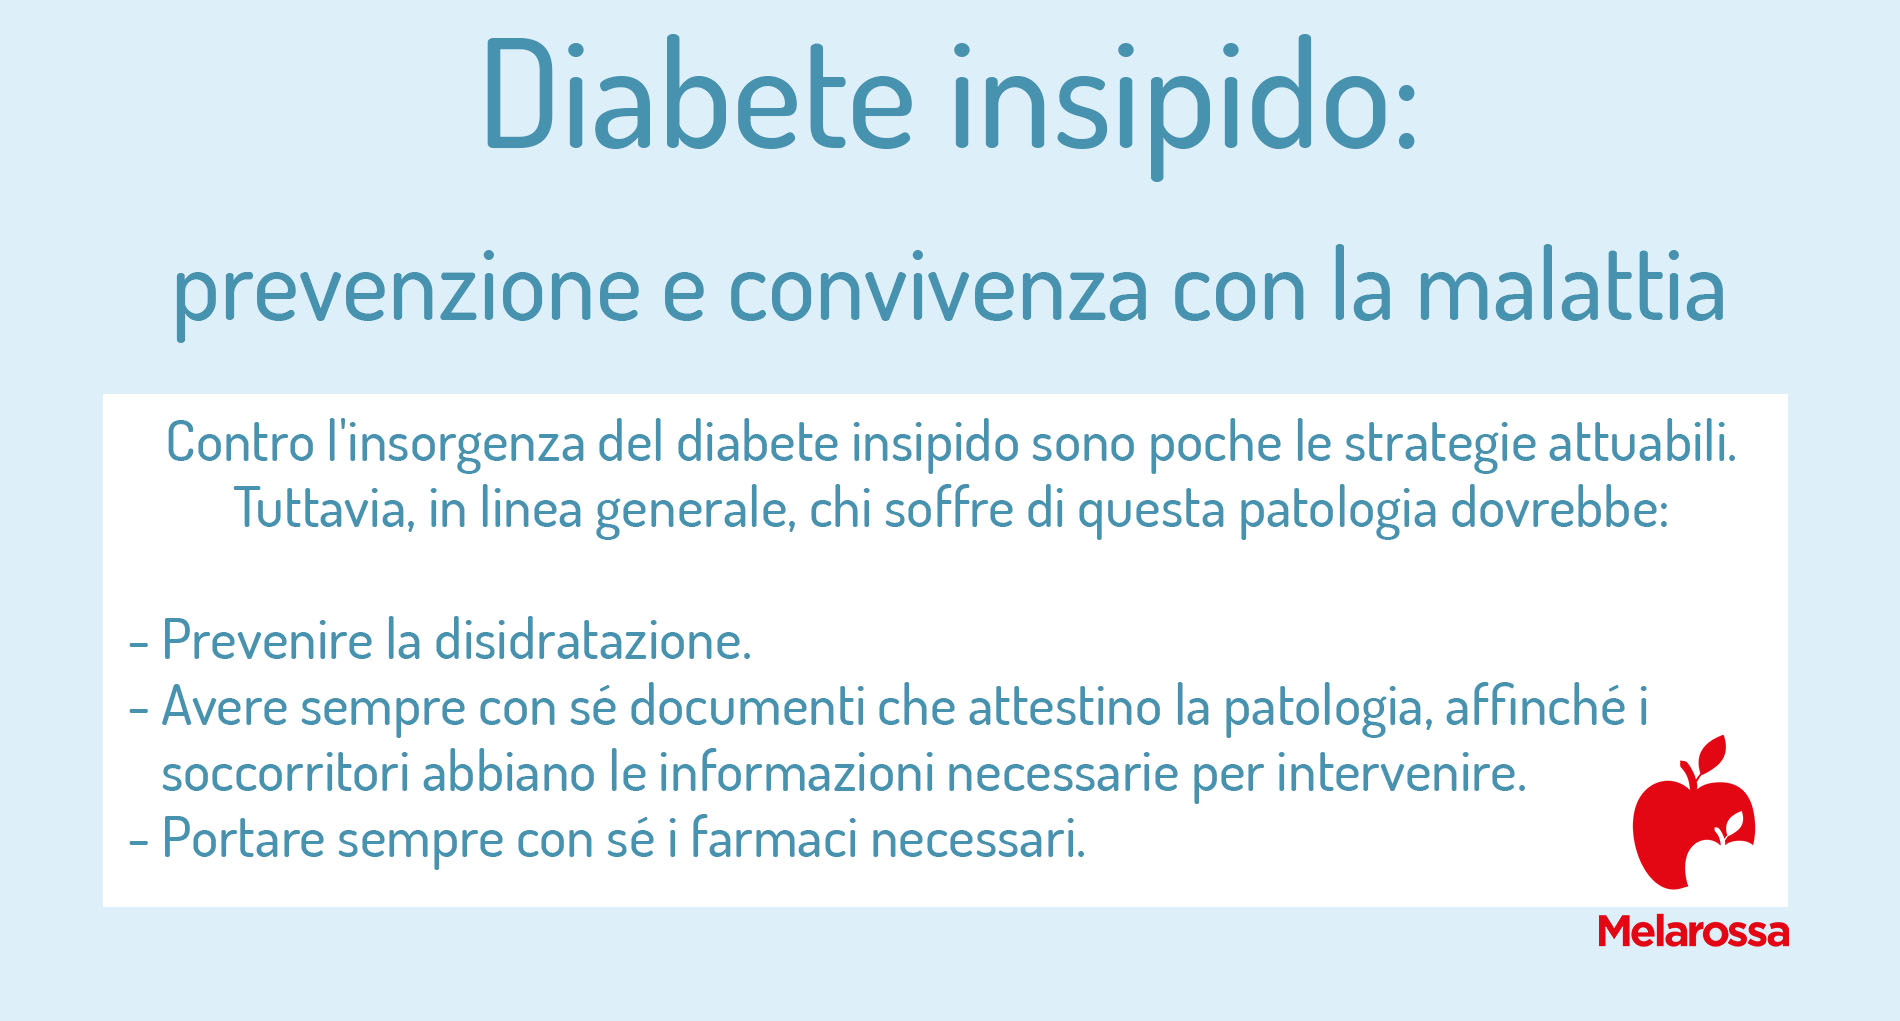 diabete insipido: convivenza con la malattia